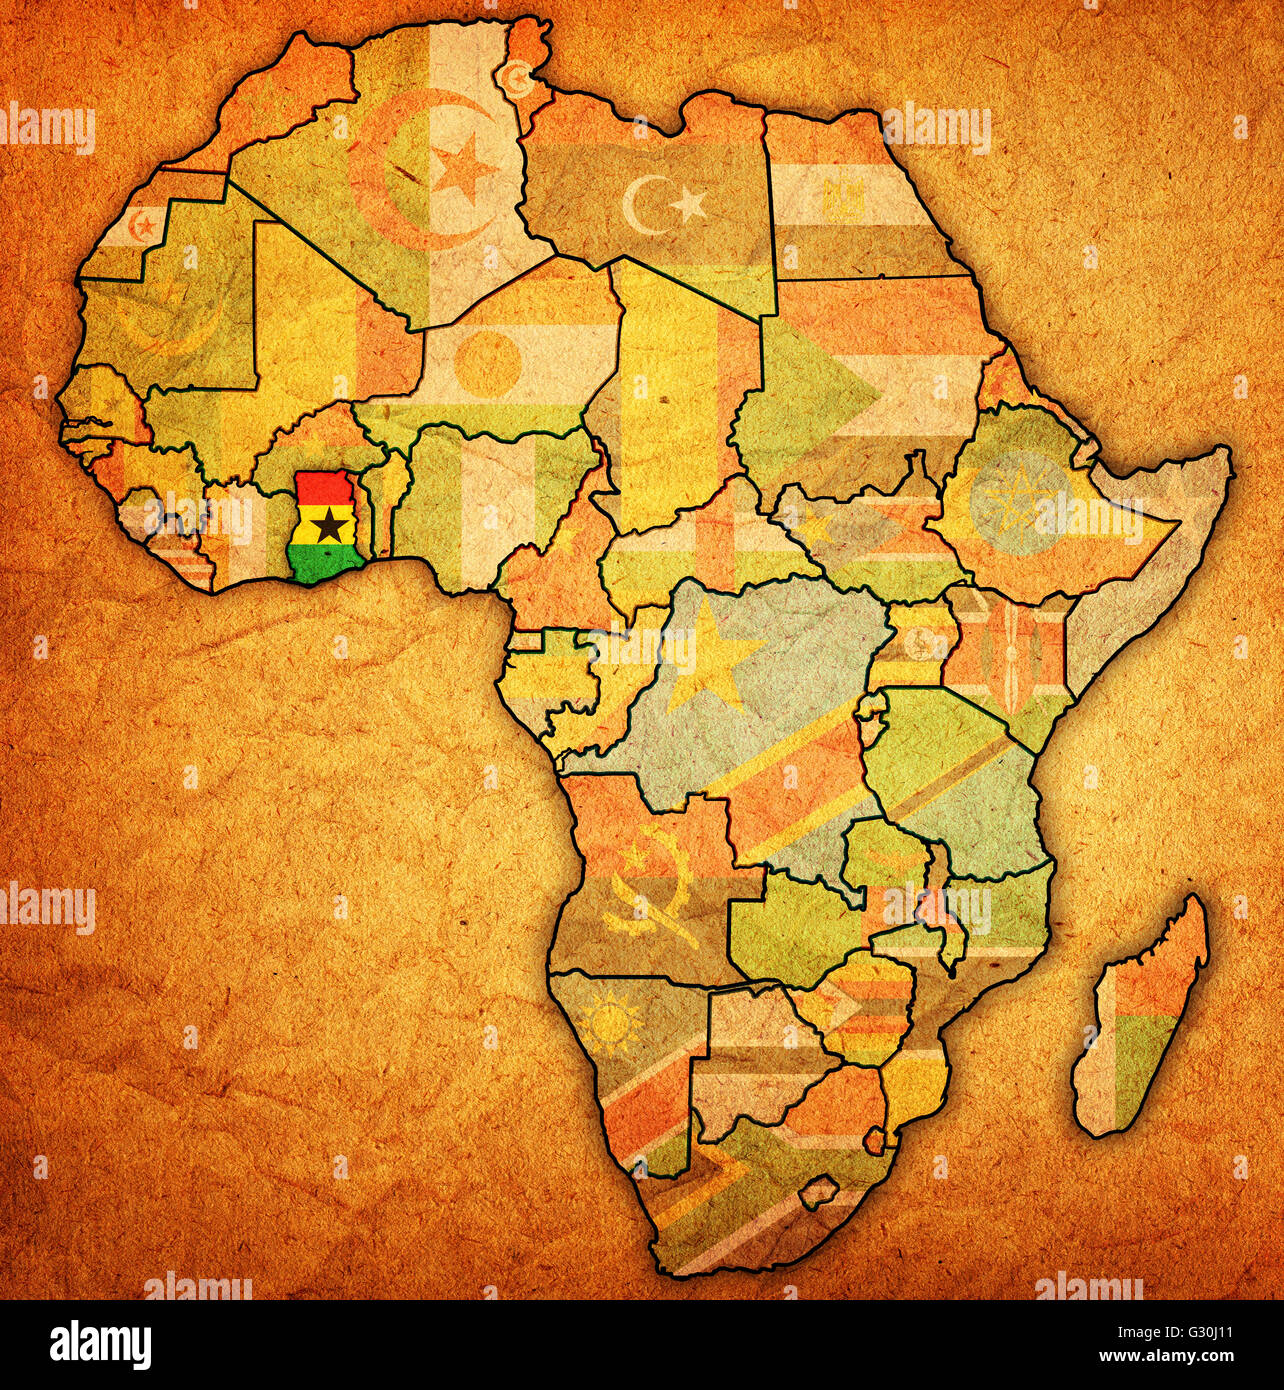 Le Ghana sur les vintage carte politique de l'Afrique avec des drapeaux Banque D'Images